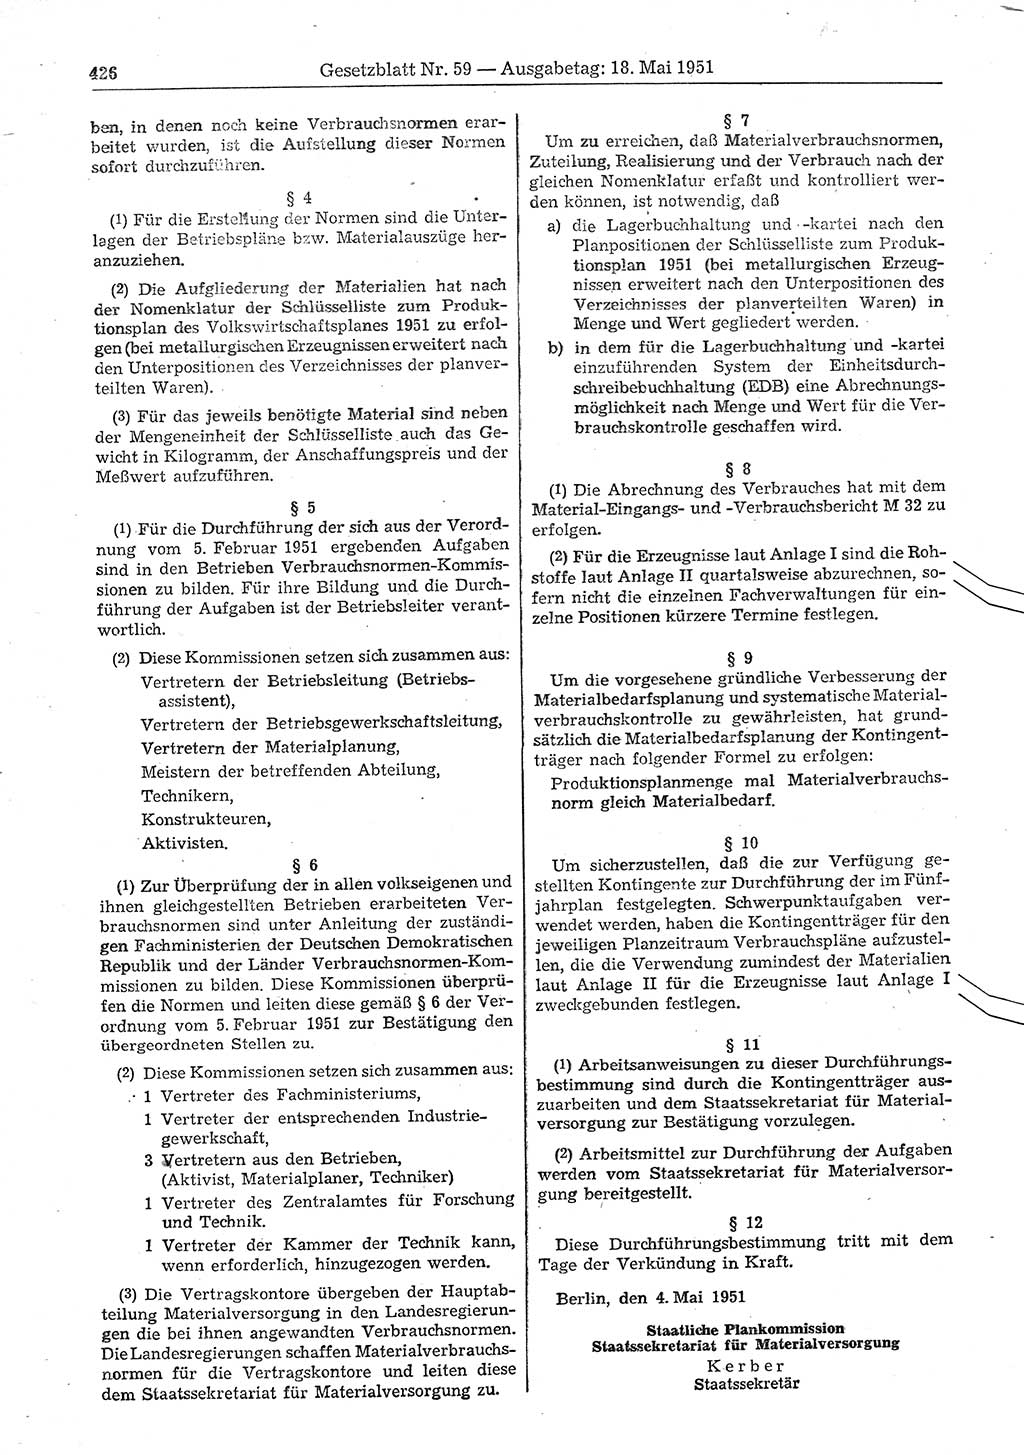 Gesetzblatt (GBl.) der Deutschen Demokratischen Republik (DDR) 1951, Seite 426 (GBl. DDR 1951, S. 426)